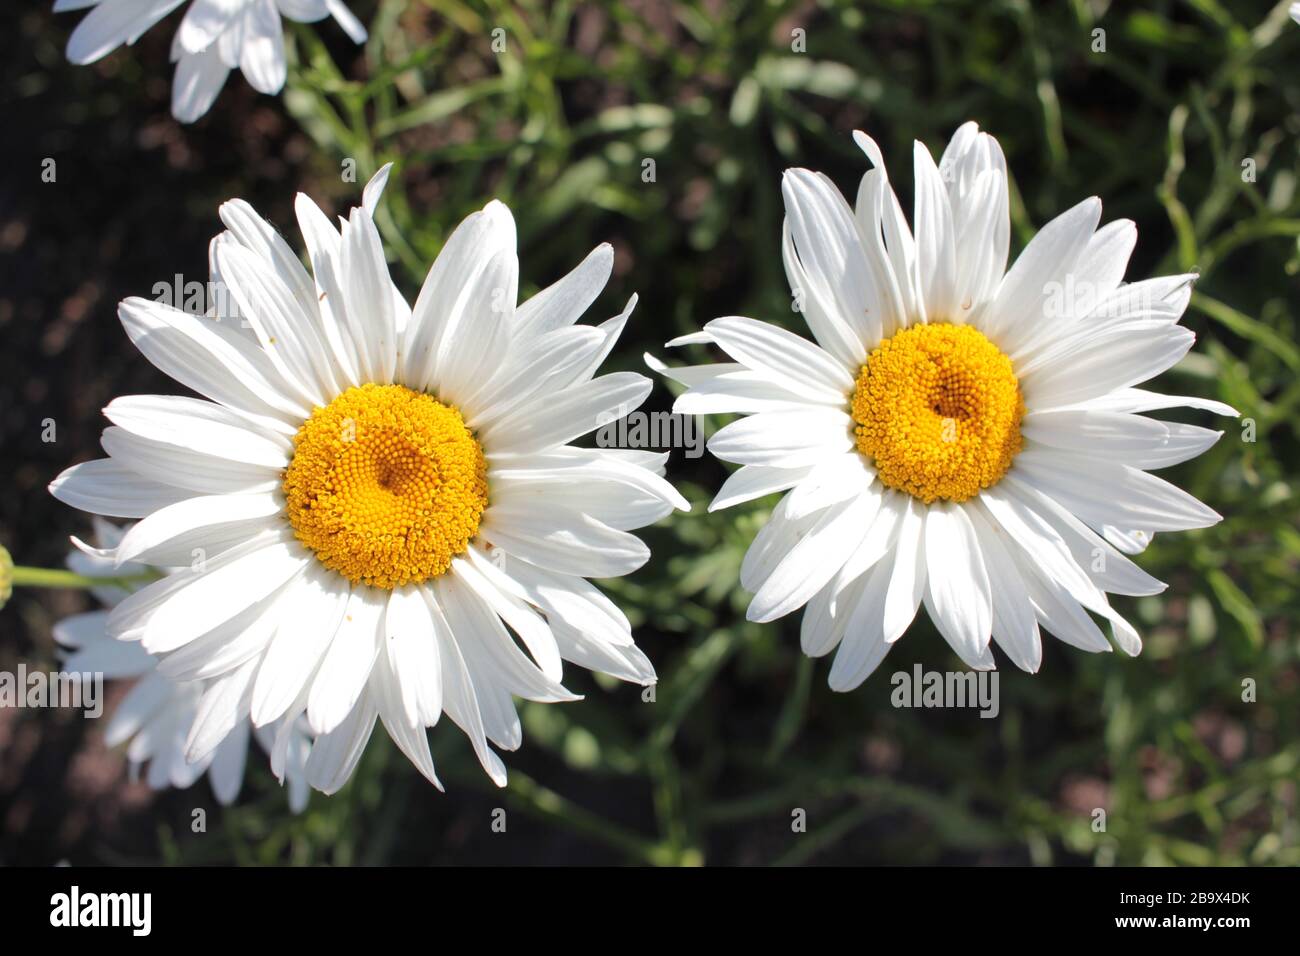 Nahaufnahme der großen weißen Gänseblümchen im Frühling, Sommer und Herbstblumengarten an einem sonnigen Tag. Weiße Blumen mit fröhlichen gelben Zentren und kräftigen Stielen. Stockfoto